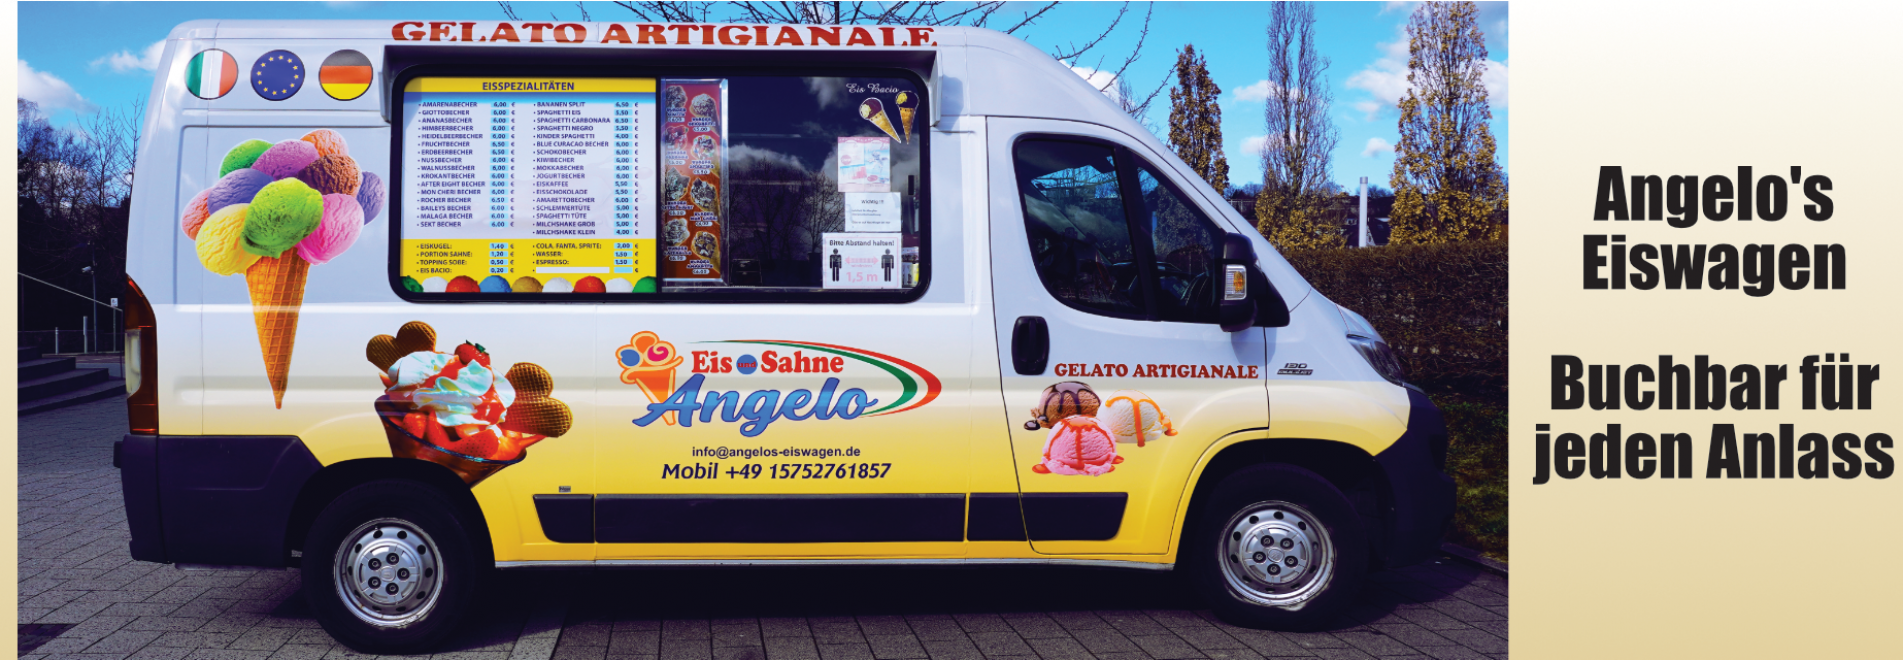 Angelos Eiswagen